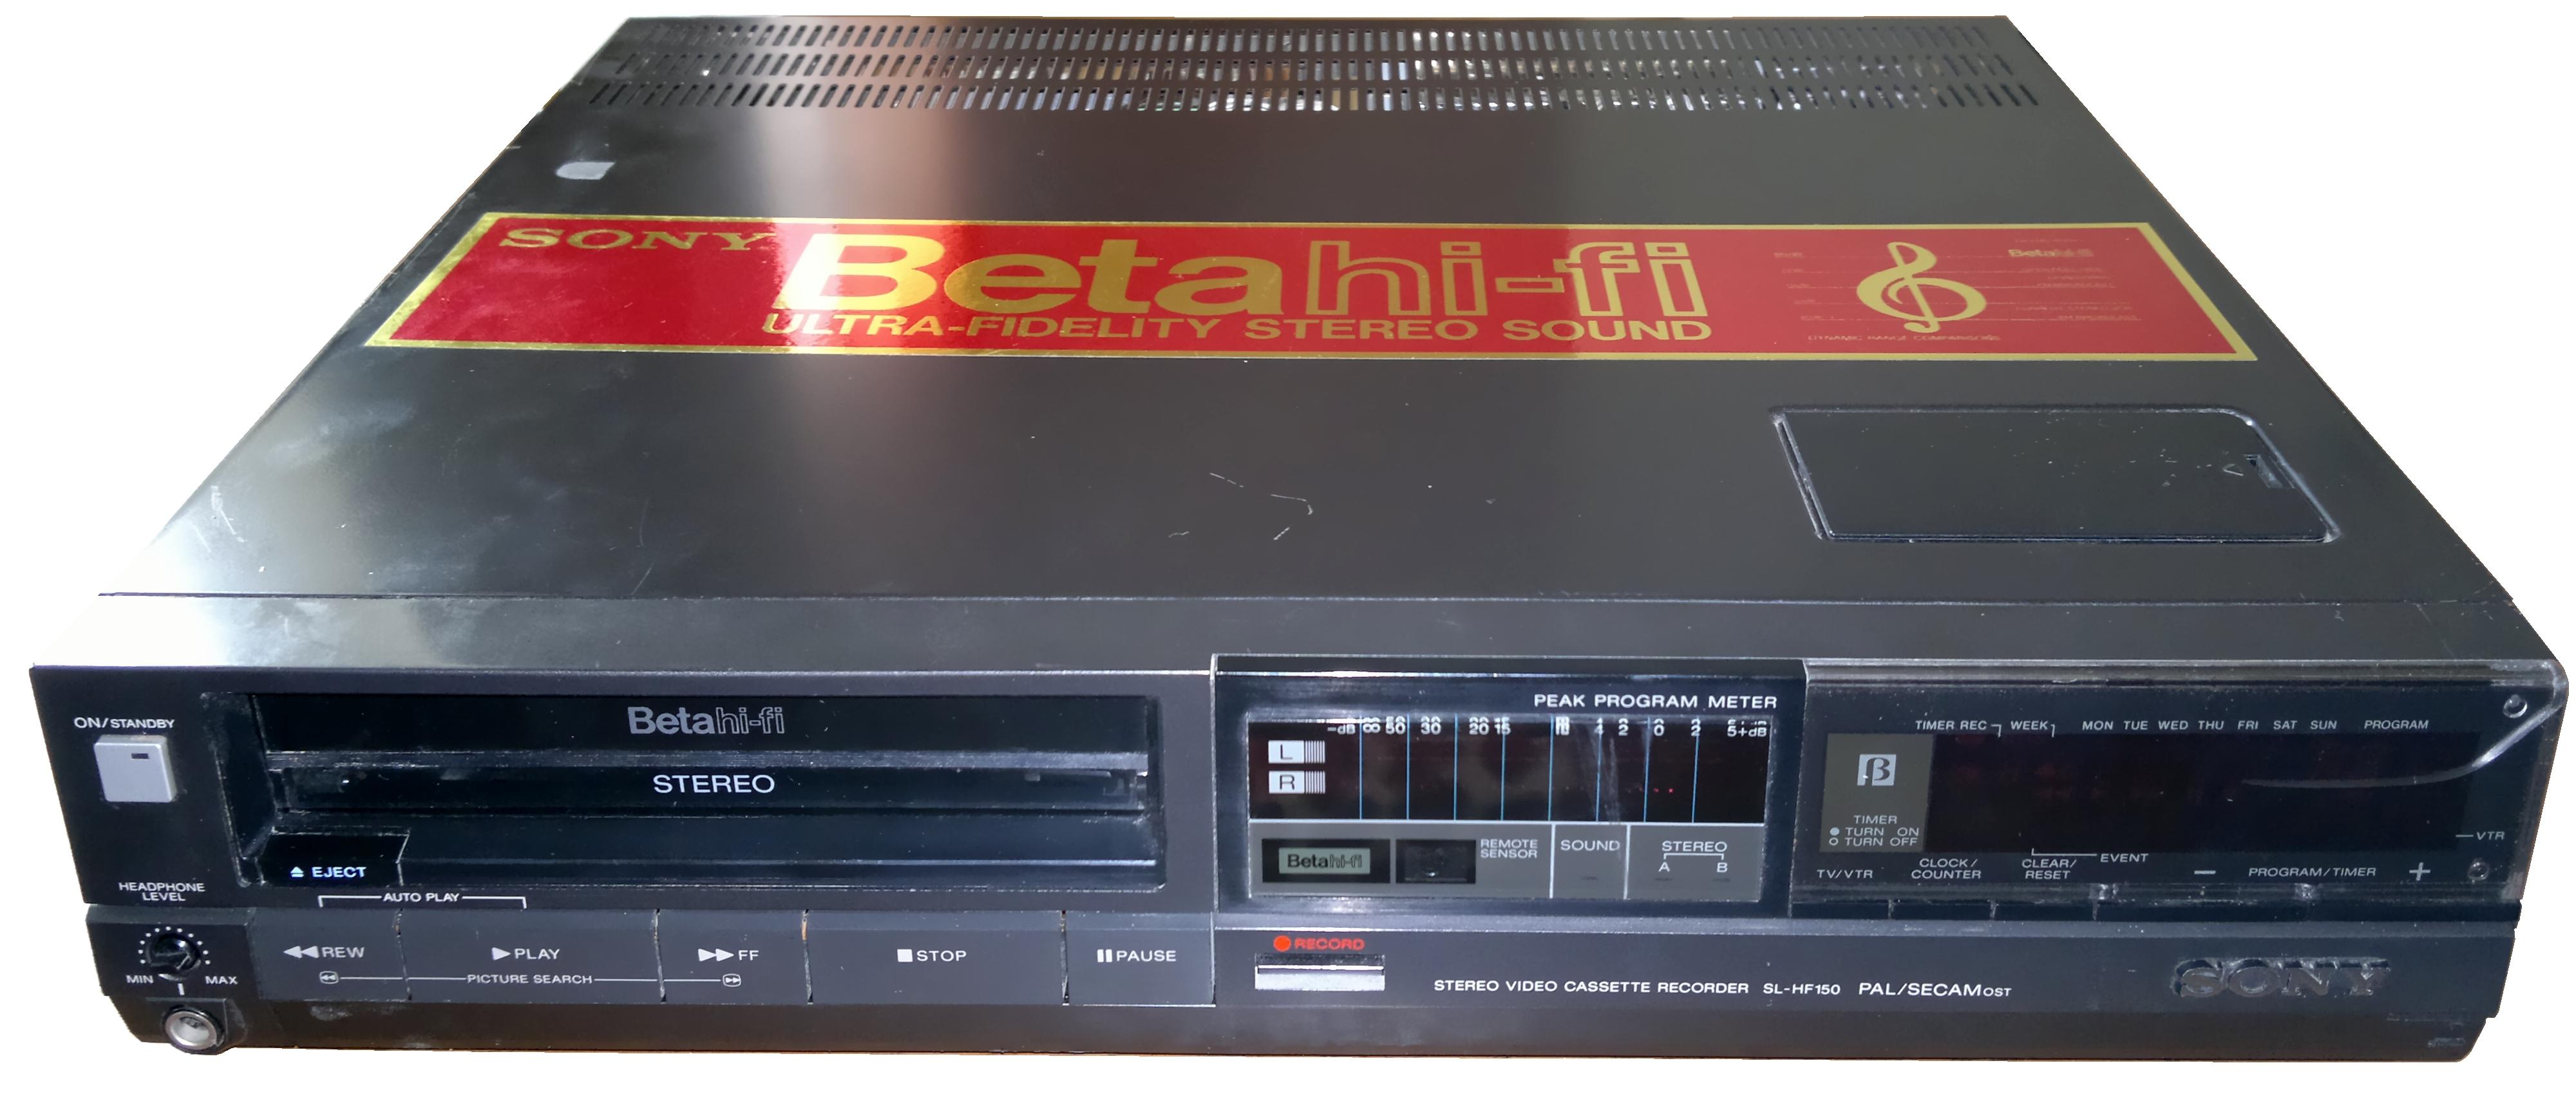 Her ser du en Sony Betamax-spiller. Dog ikke av de aller første modellene som kom på markedet.Foto: Wikipedia